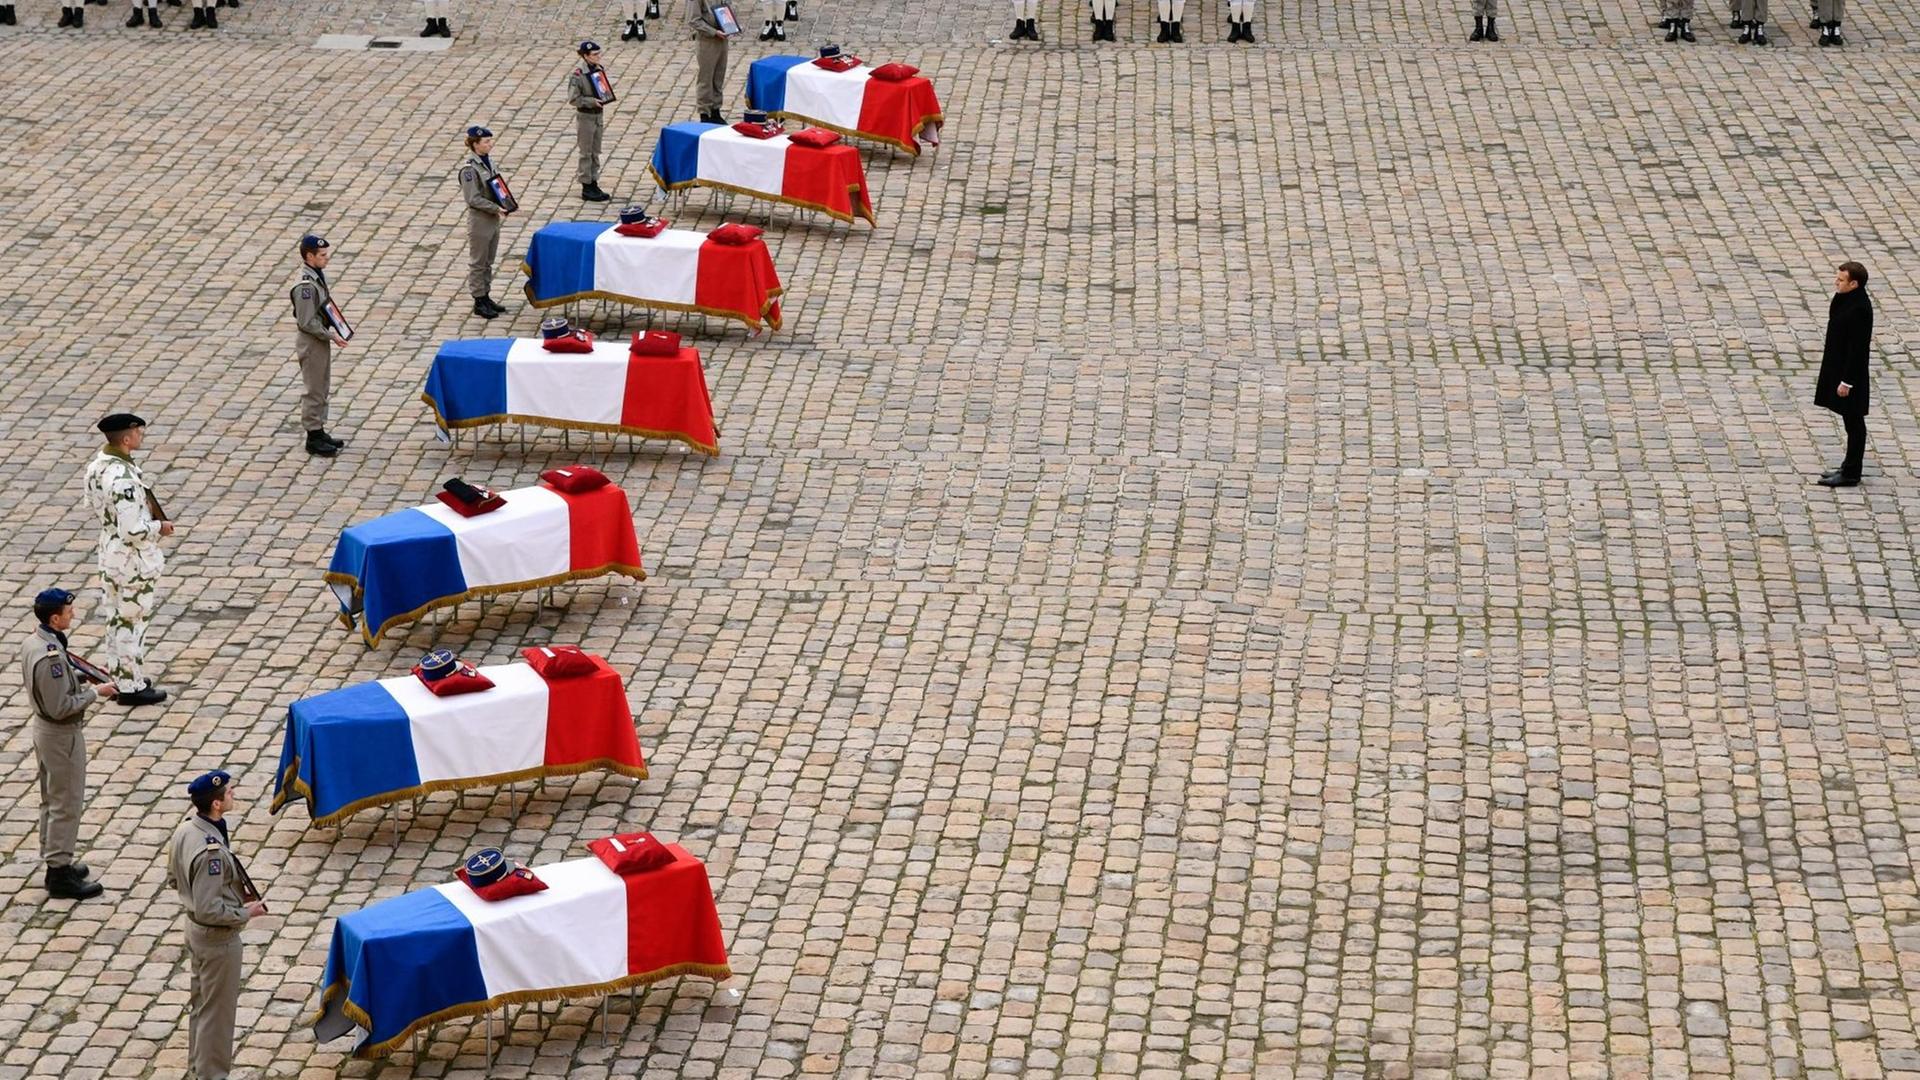 Die Särge von französischen Soldaten, die ím Einsatz der "Operation Barkhane" in Mali gefallen sind, stehen am 12. Februar 2019 mit Nationalfarben bedeckt im Hof des Hotel des Invalides in Paris.